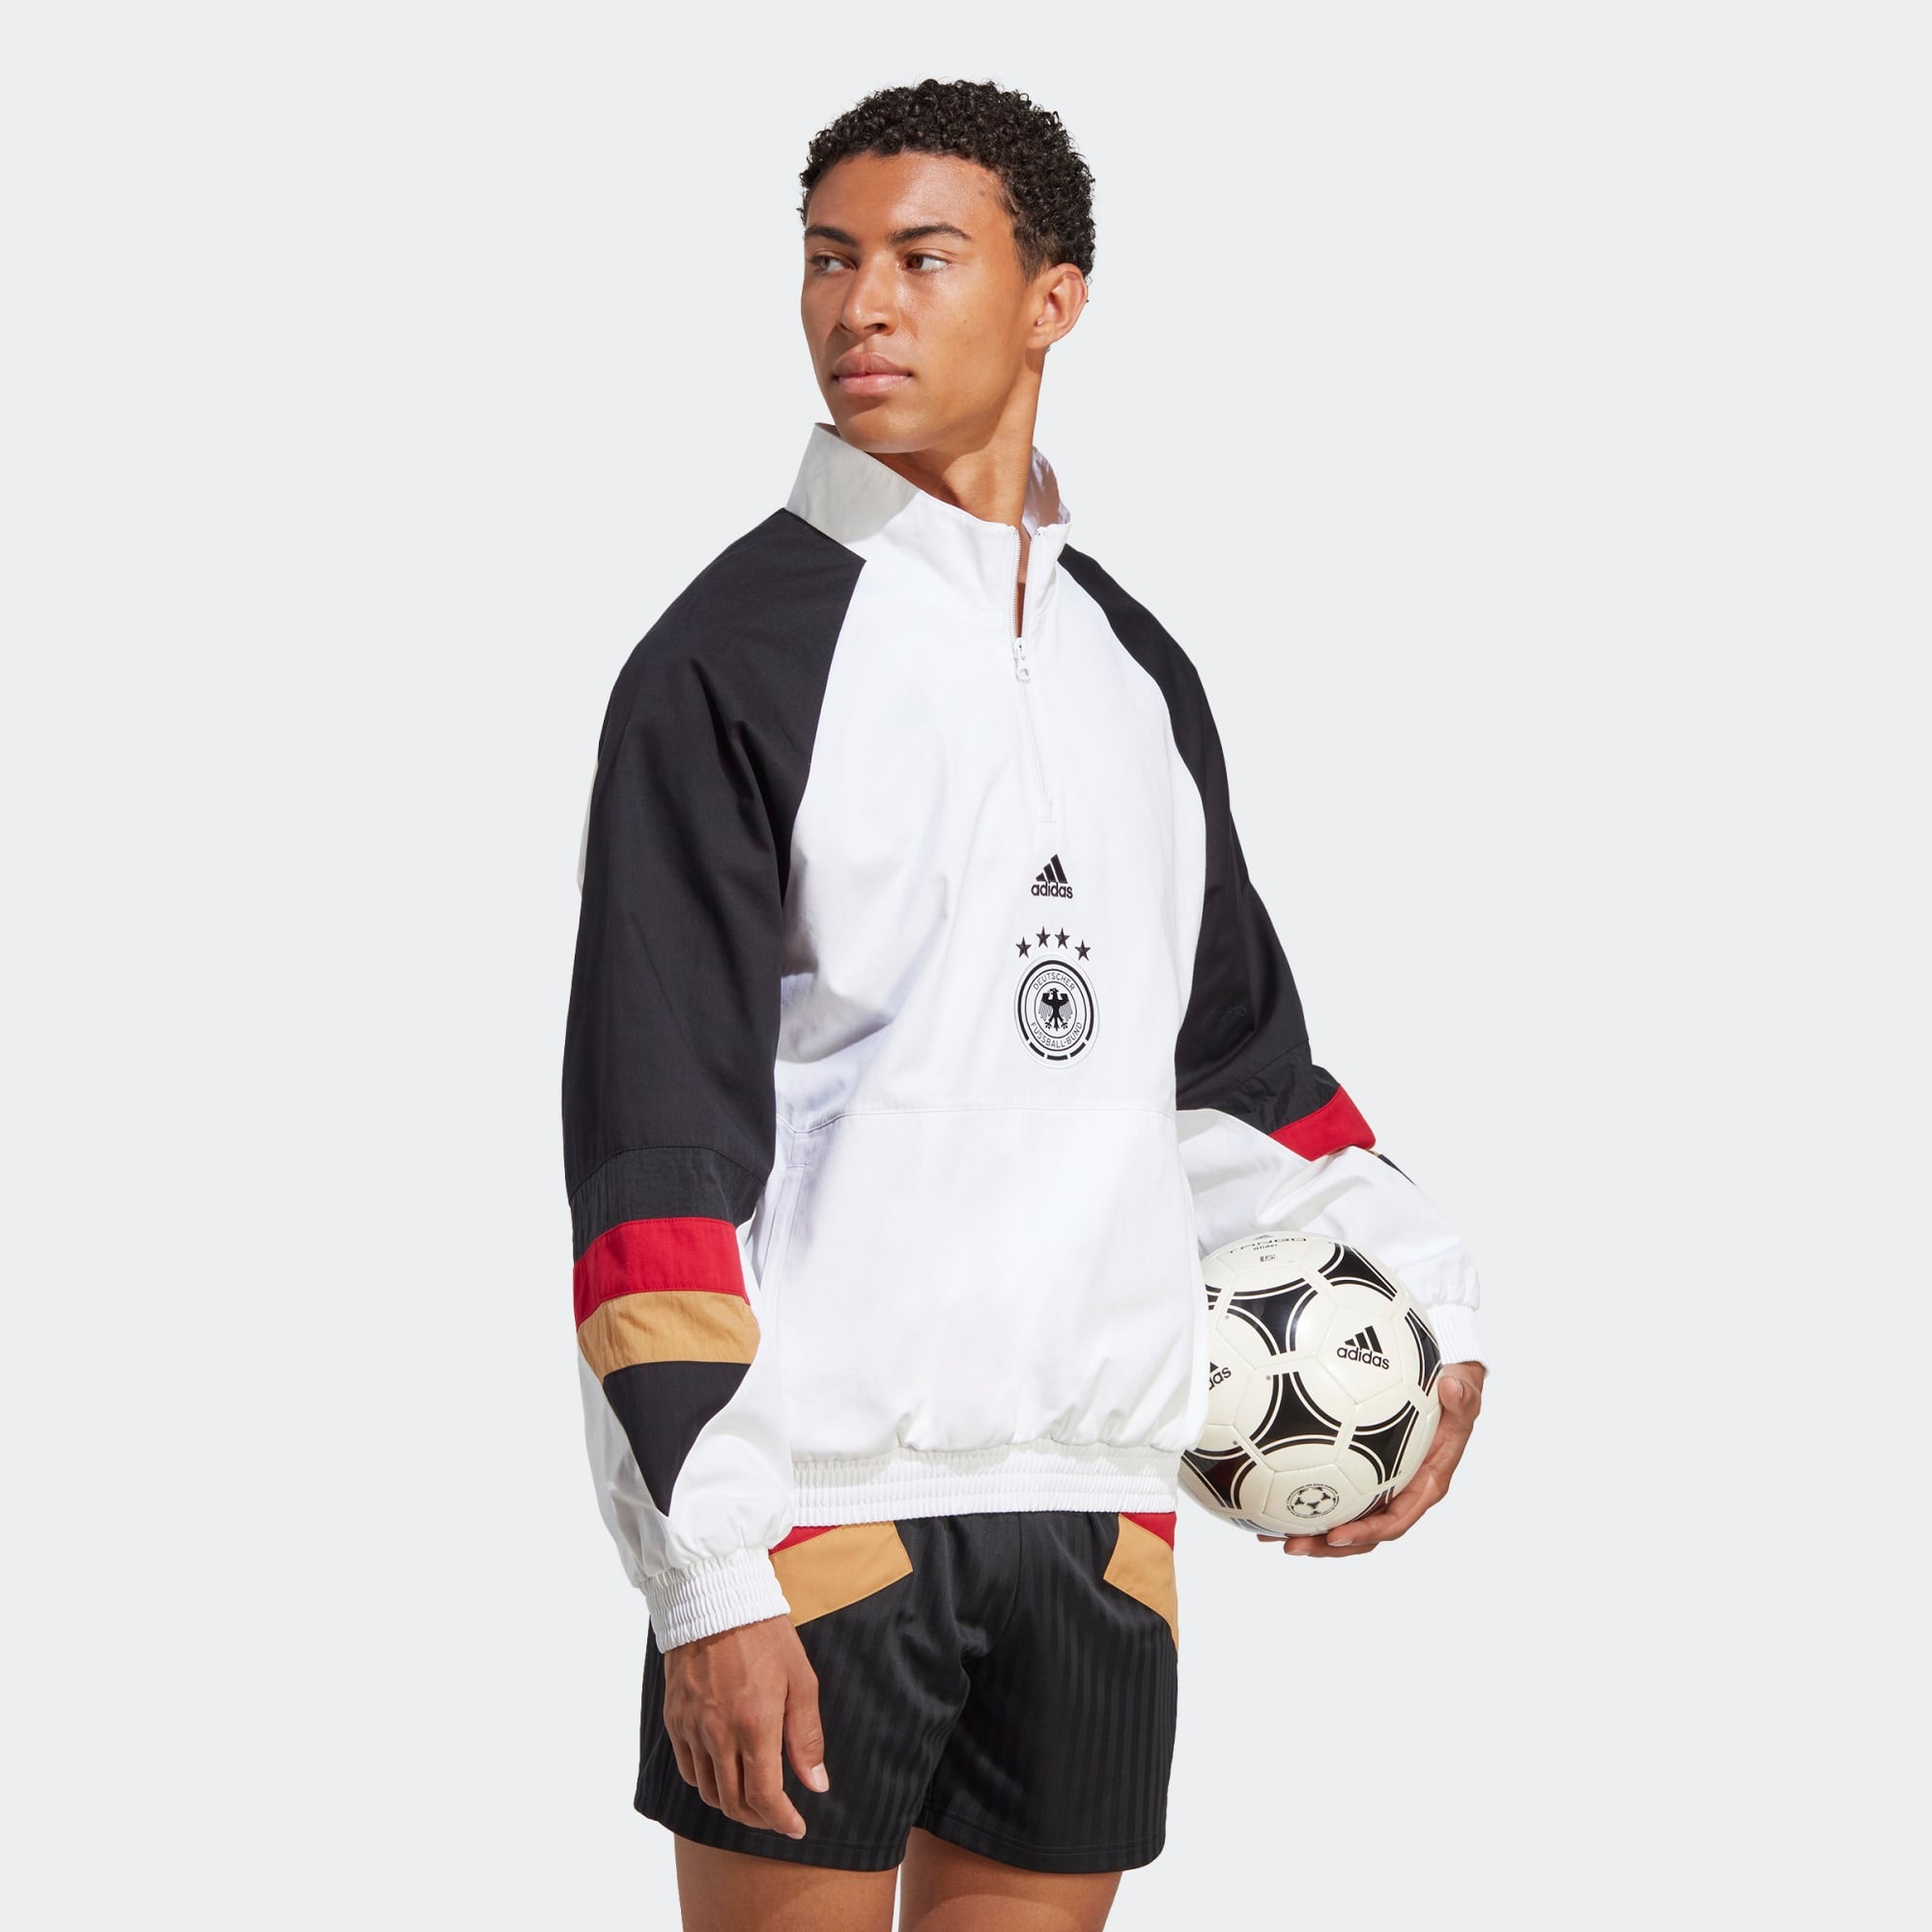 tsunami gasolina Numérico adidas Germany Men's Icon Jacket